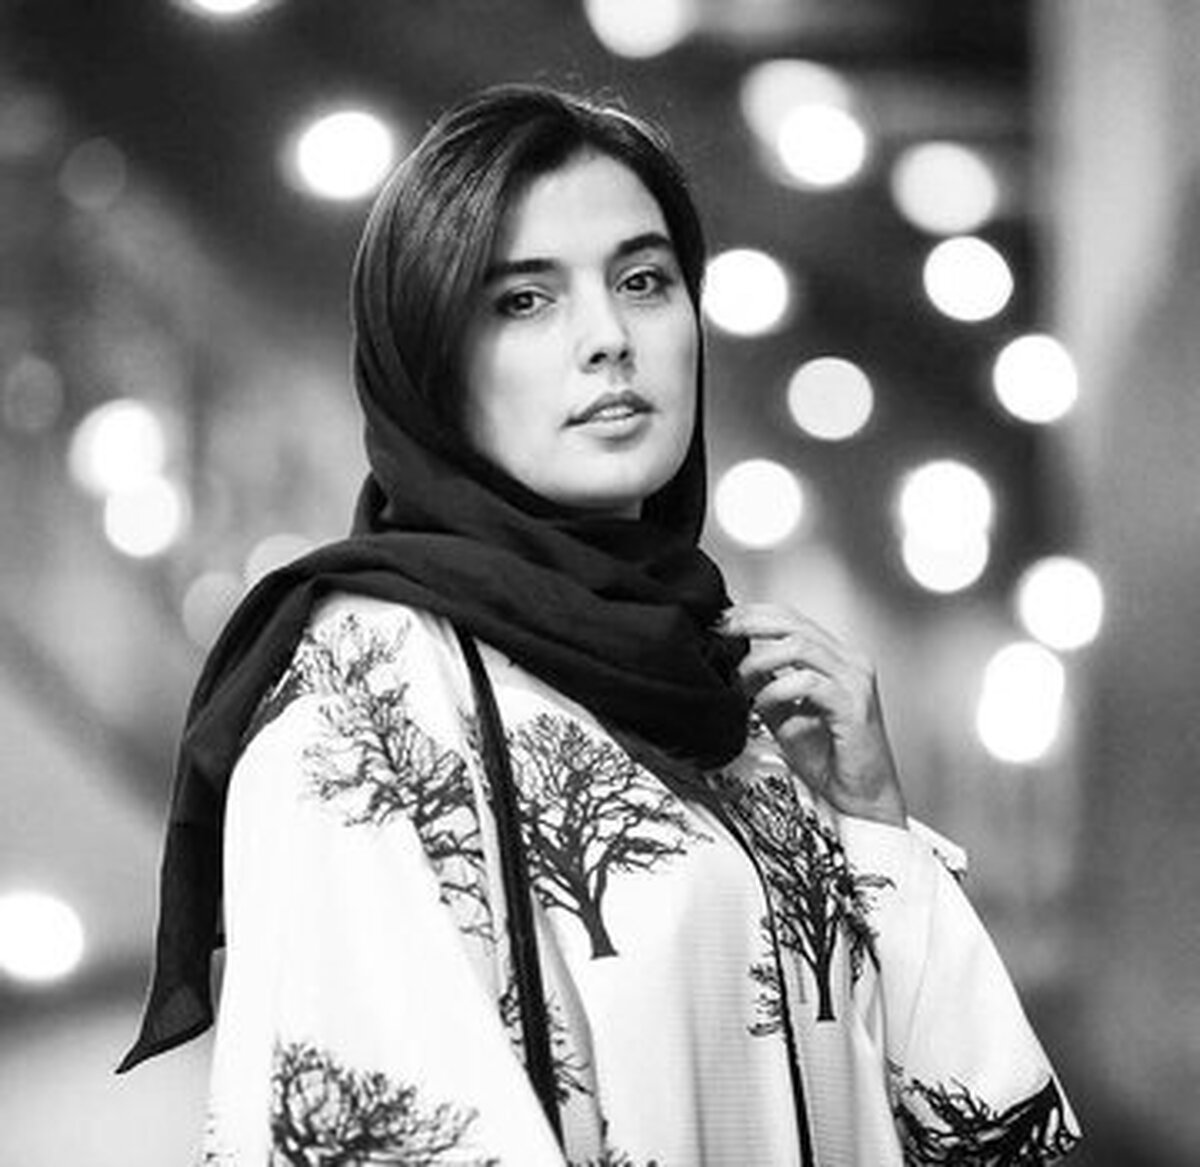 بازیگر زن بودن خیلی جذاب است، اما نه در سینمای ایران